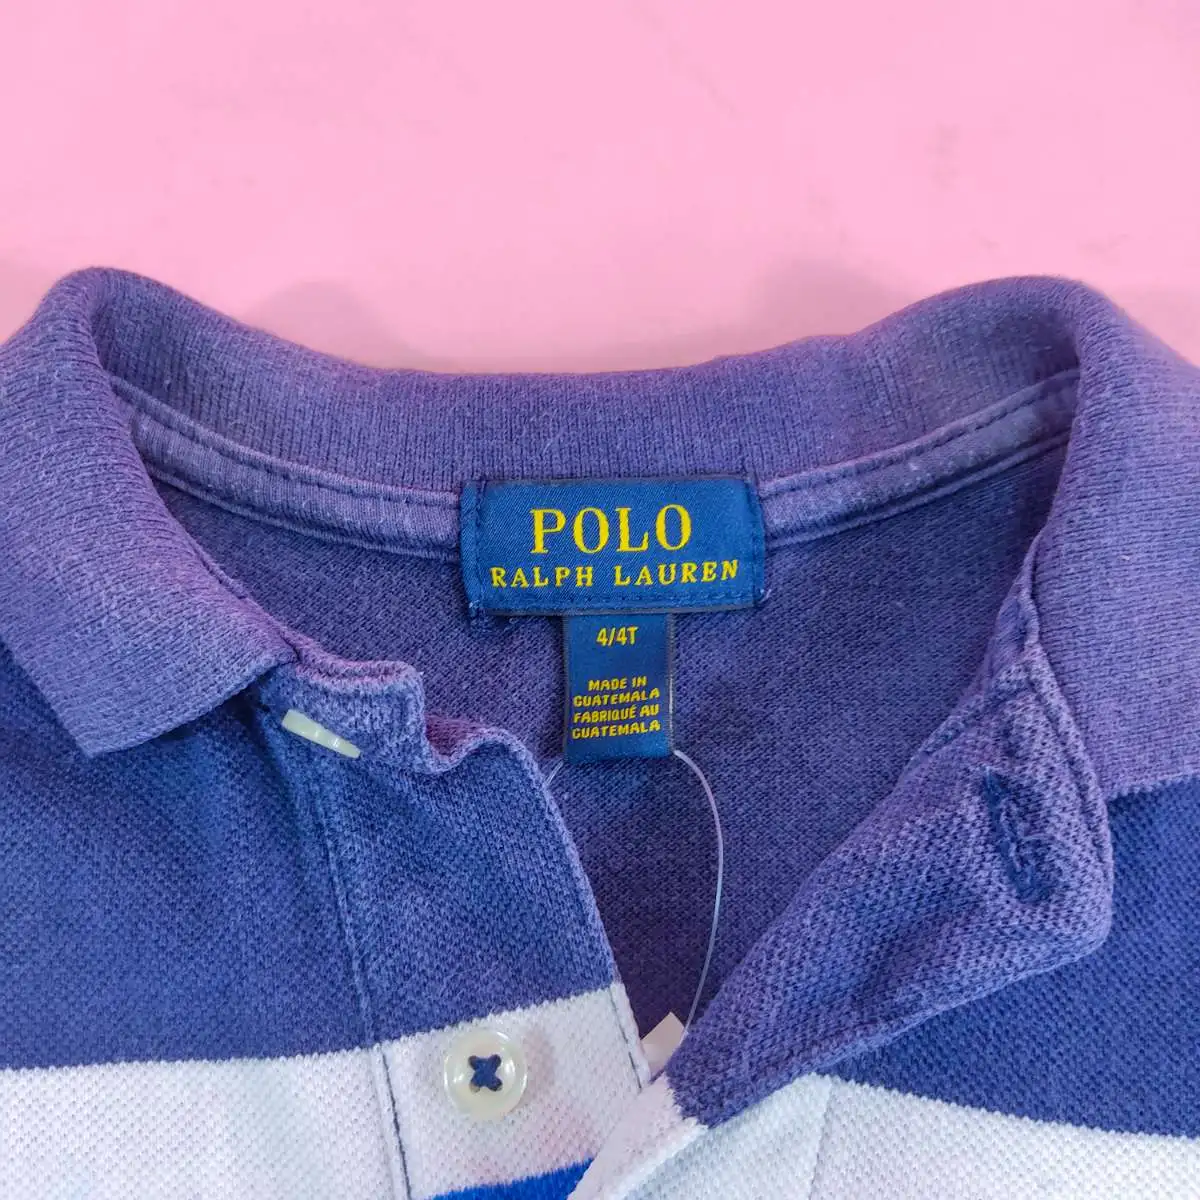 Polo Ralph Lauren เสื้อโปโลคอปกสีกรมลายขวางขาว,น้ำเงิน 4/4T